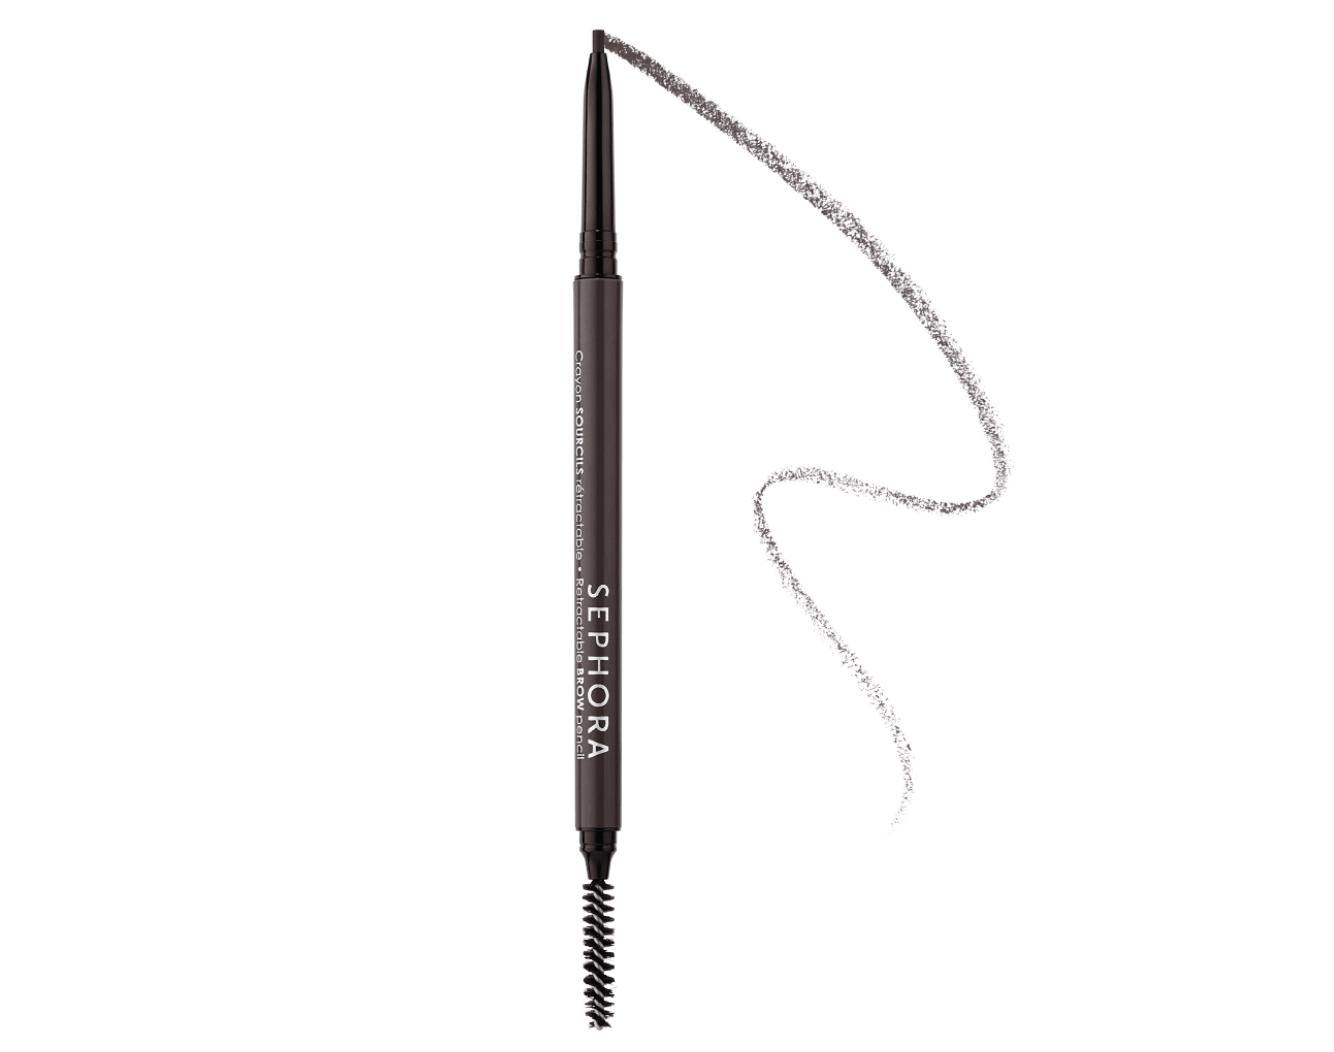 Sephora Retractable Brow Pencil Waterproof Ebony 11